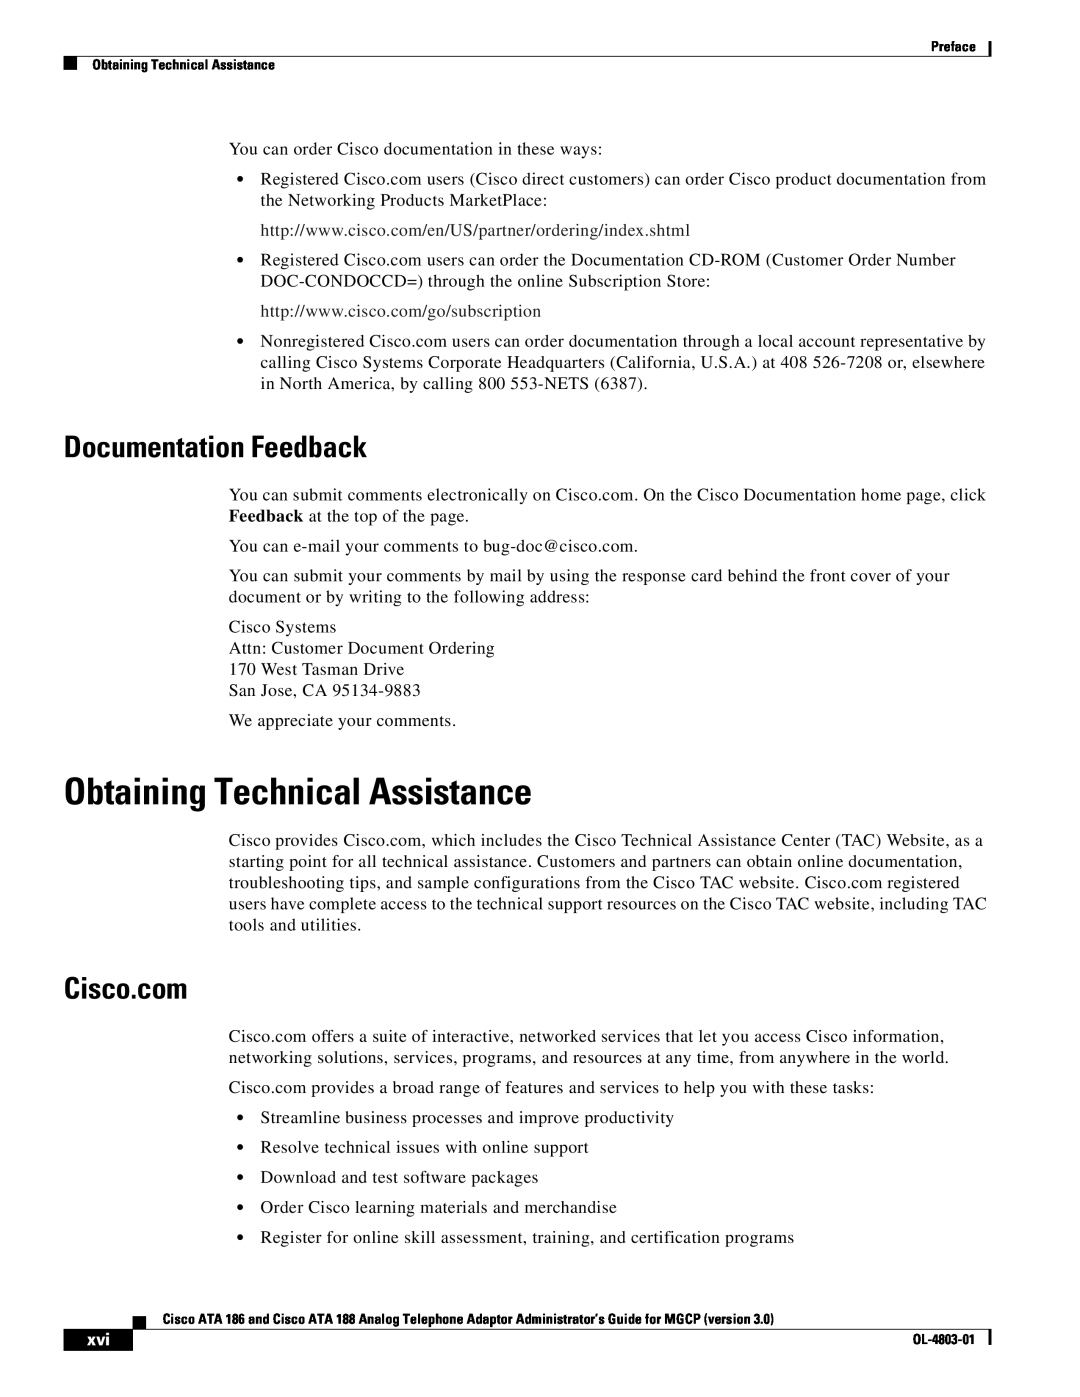 Cisco Systems ATA 186, ATA 188 manual Obtaining Technical Assistance, Documentation Feedback, Cisco.com 